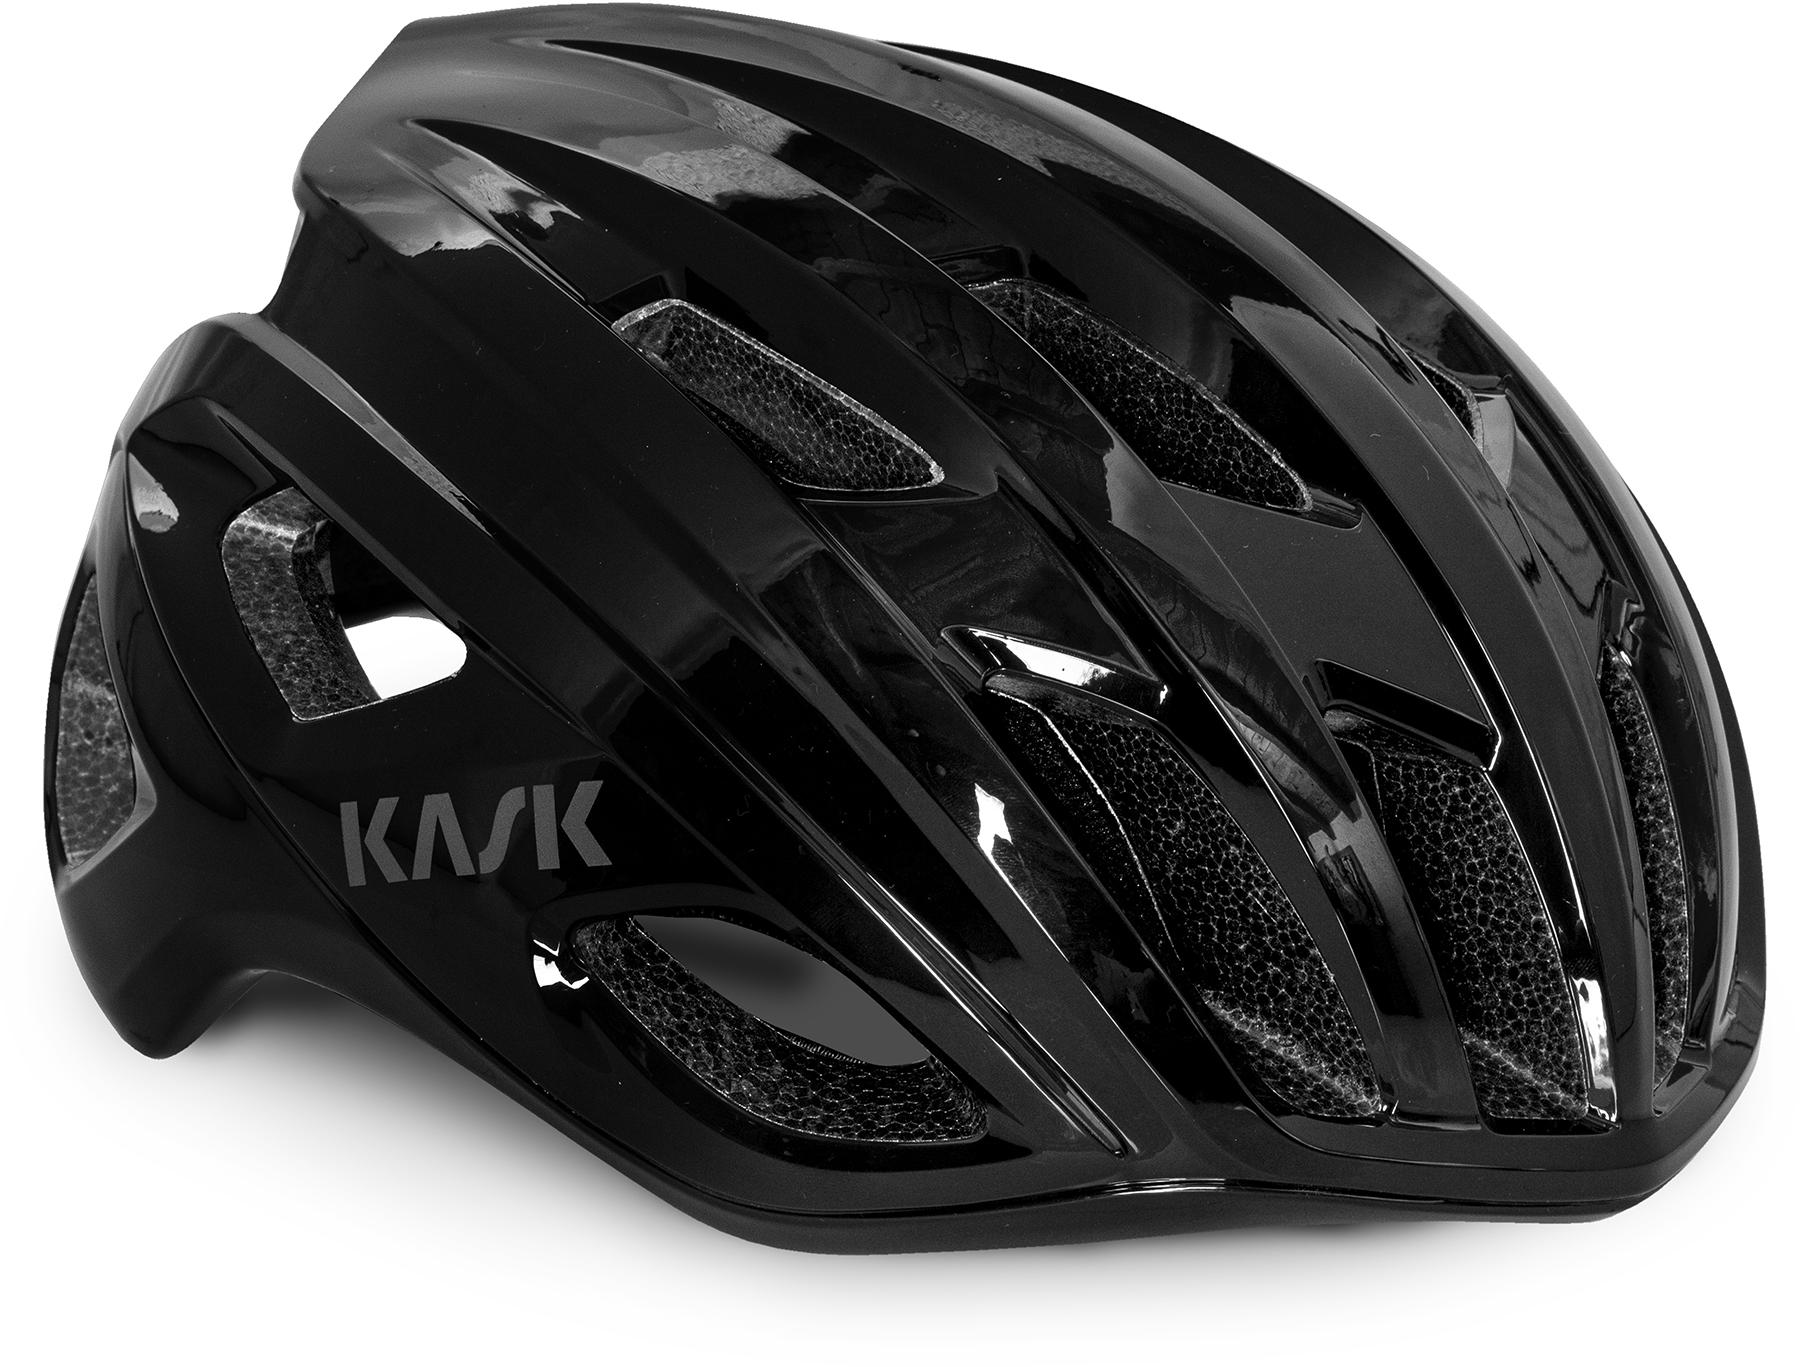 Kask Mojito3 Road Cycling Helmet (wg11) - Black